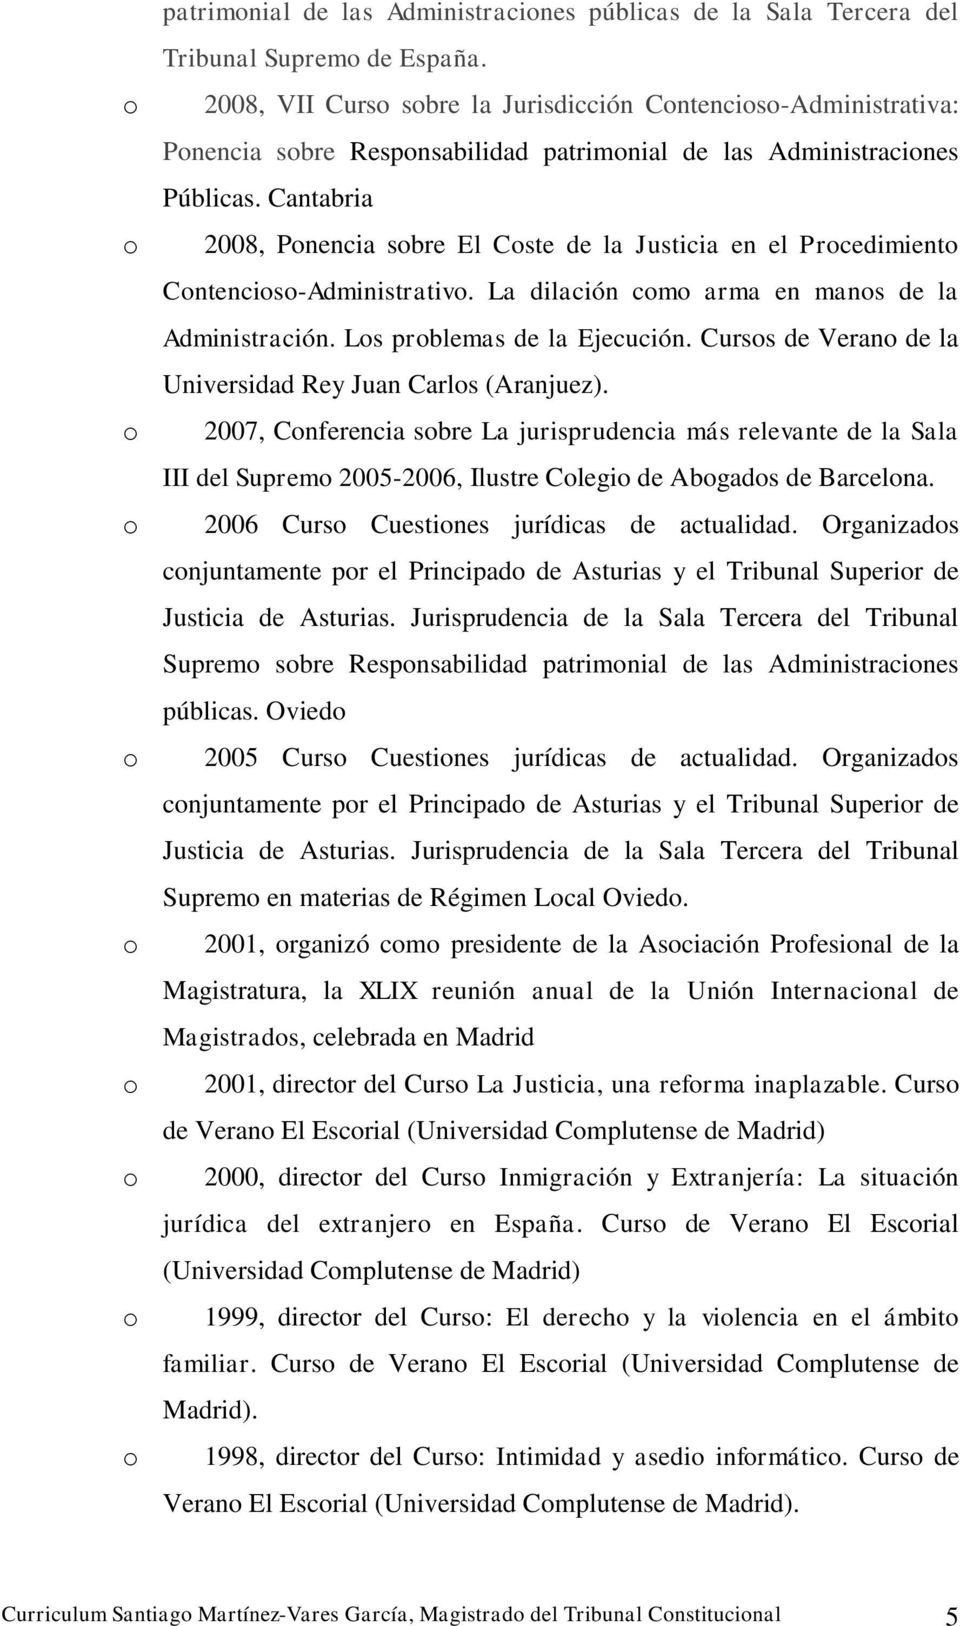 Cantabria 2008, Pnencia sbre El Cste de la Justicia en el Prcedimient Cntencis-Administrativ. La dilación cm arma en mans de la Administración. Ls prblemas de la Ejecución.